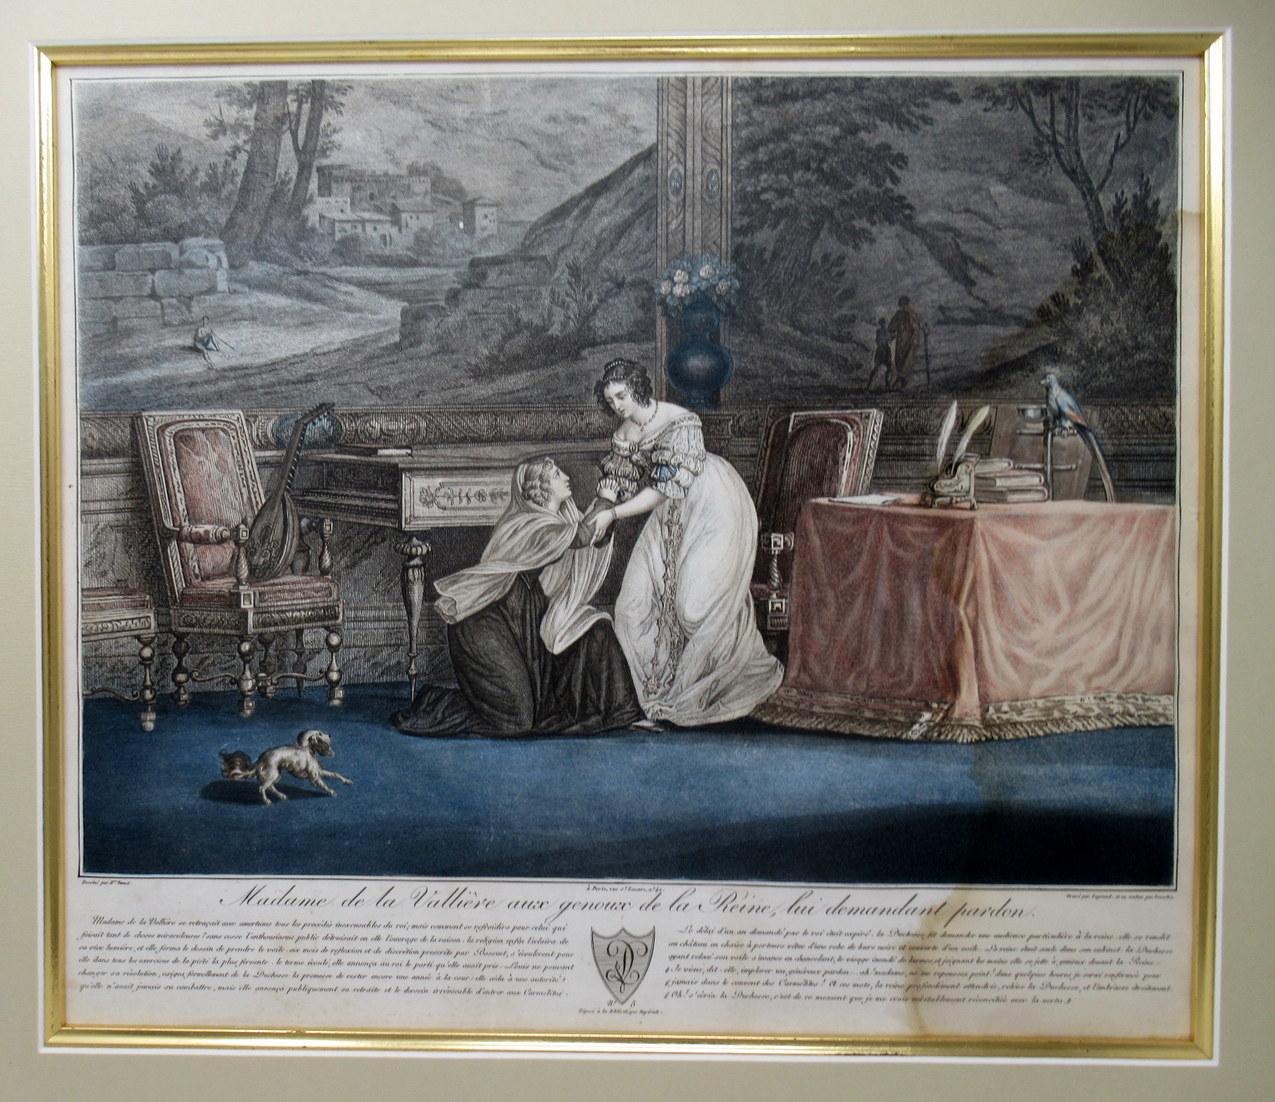 Französischer handkolorierter Kupferstich auf großformatigem Papier, Anfang 19. Jahrhundert, nach Horace Vernet (1789-1863). 

